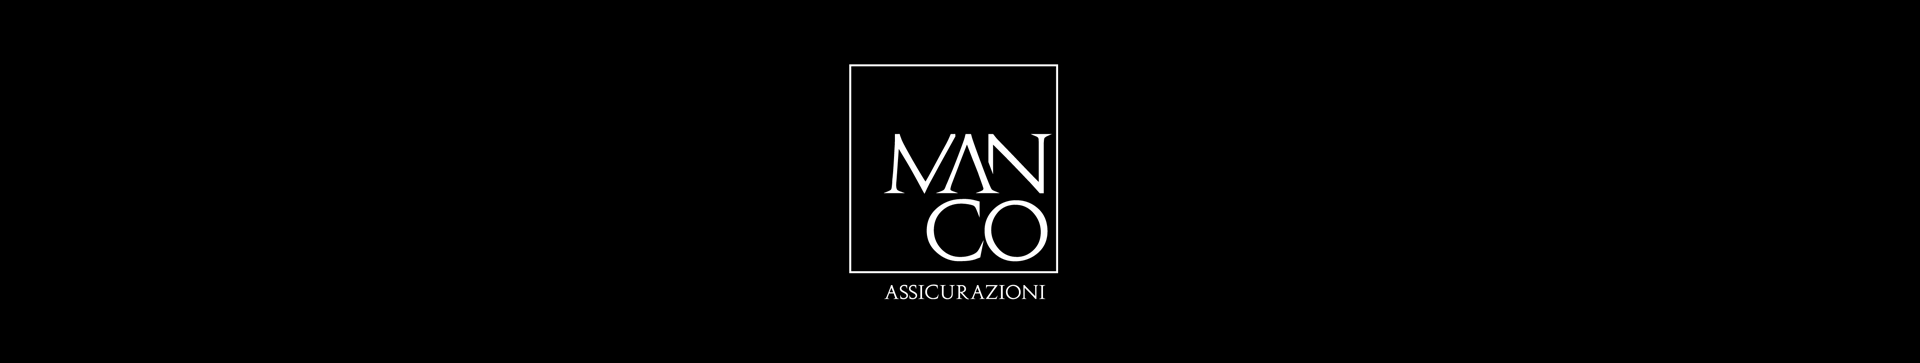 logotipo aseguradora Manco